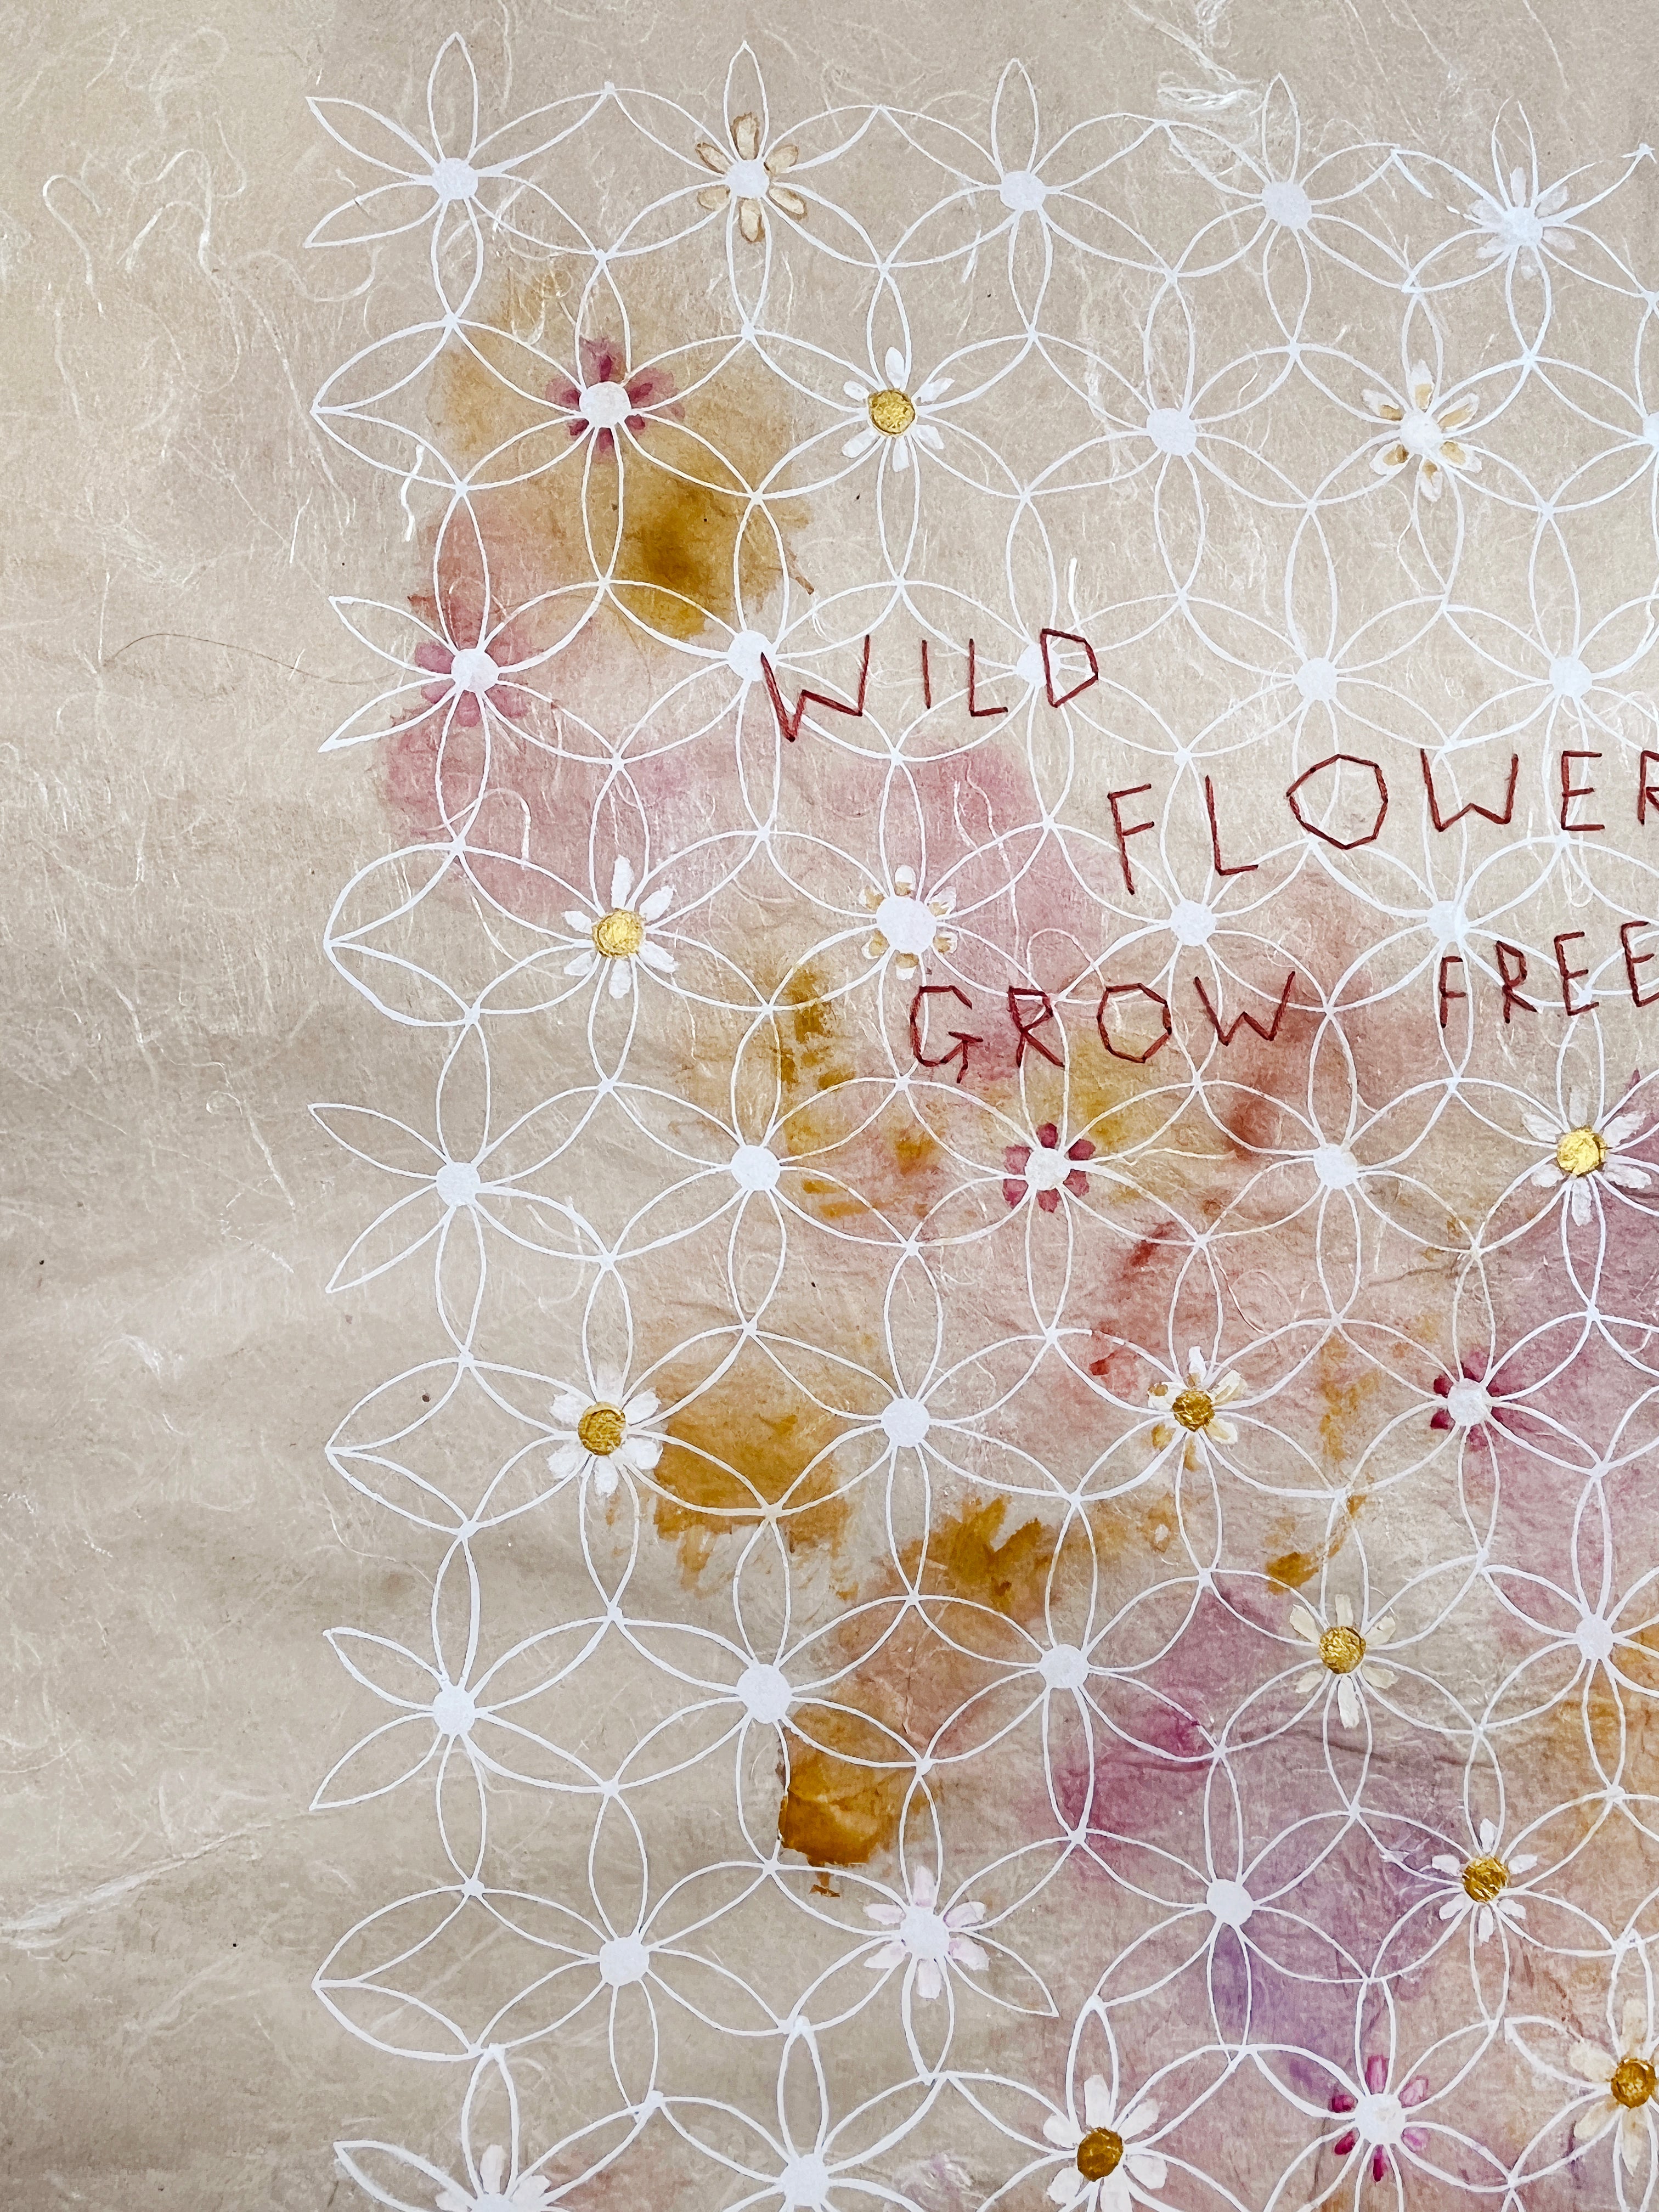 Wildflower Musings - Wild Flowers Grow Freely